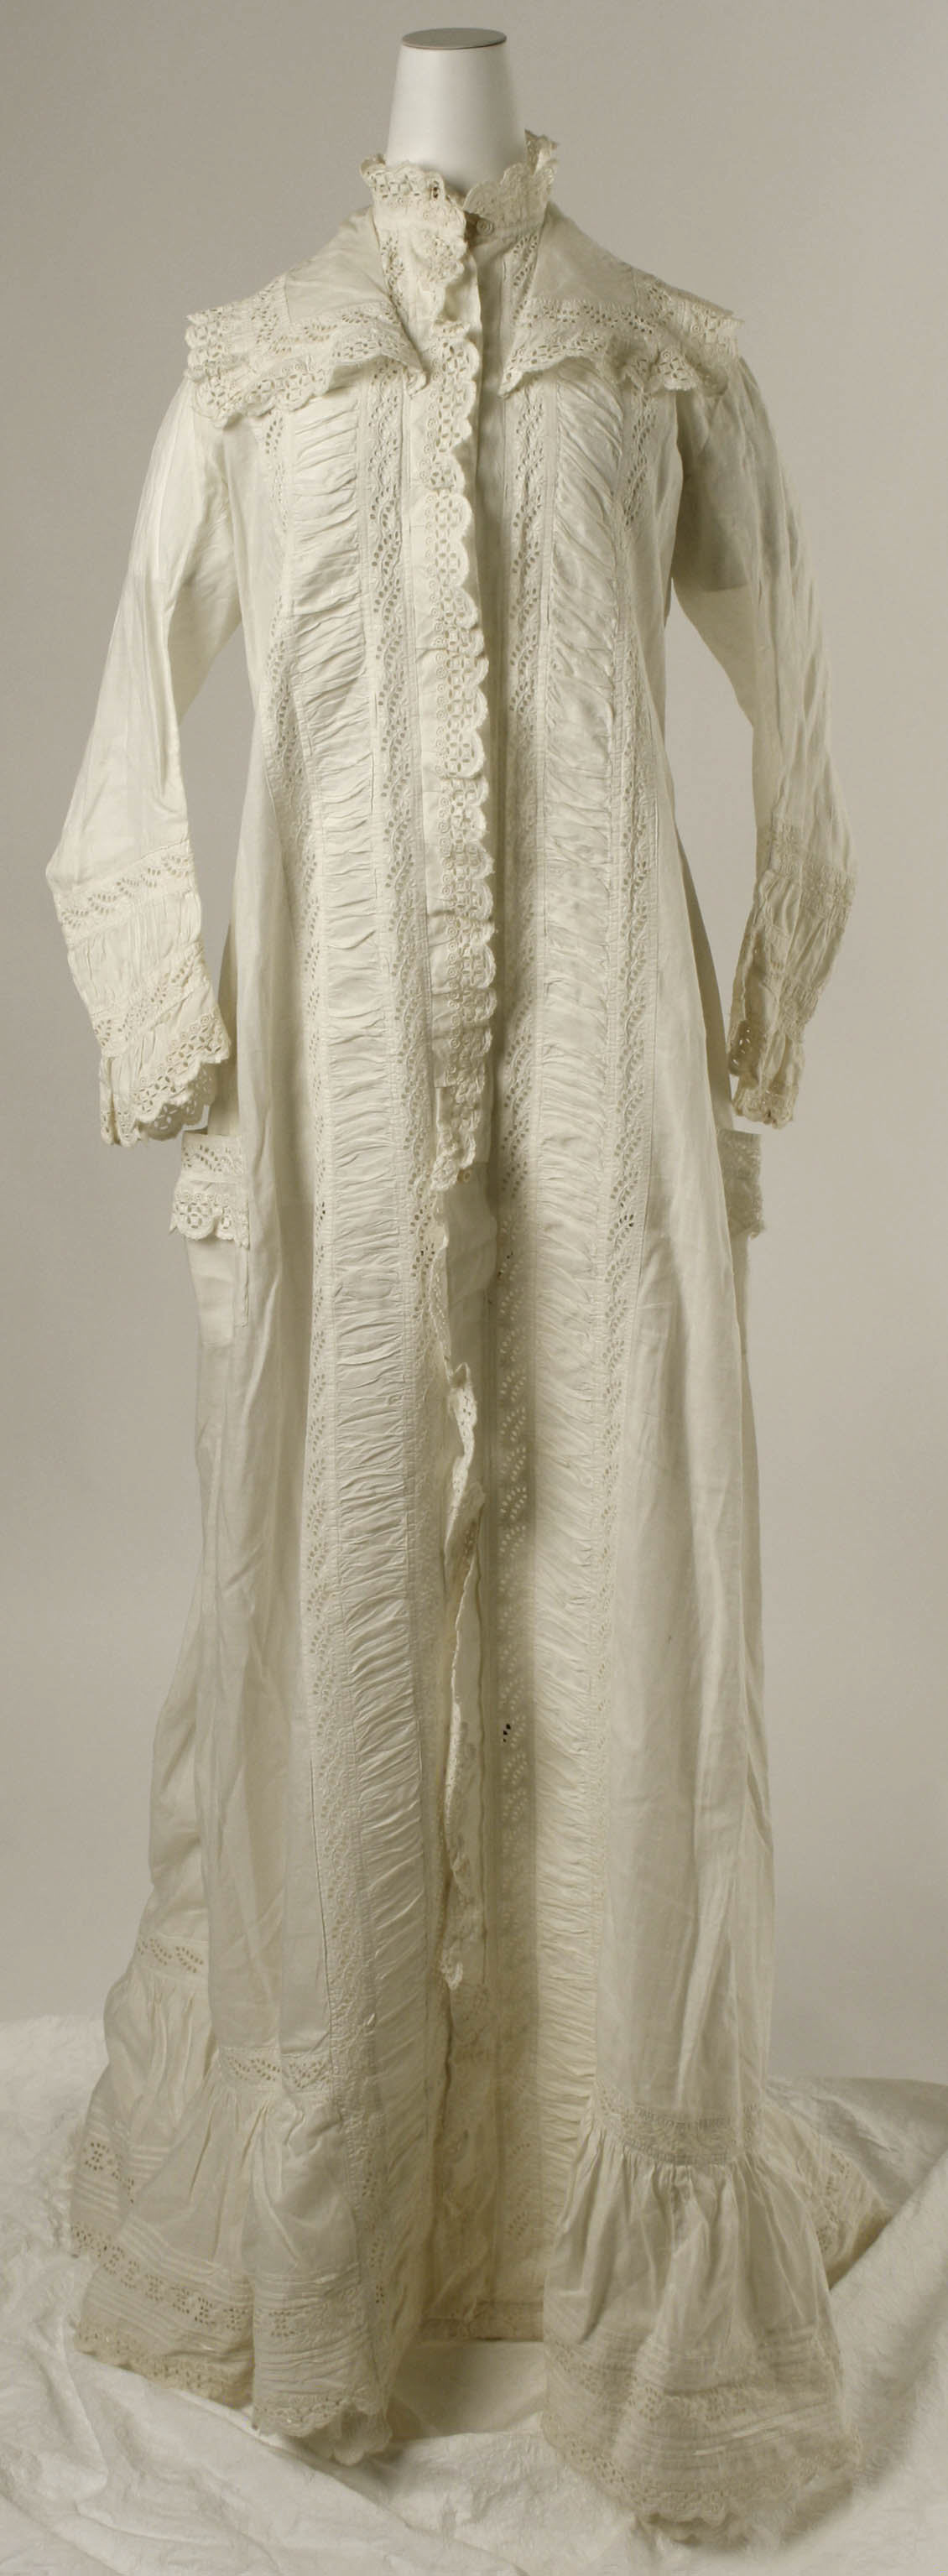 Капот женская одежда. Шлафор 19 век. Кисейное платье 1880. Халат женский 19 век. Халаты 19 века женские.